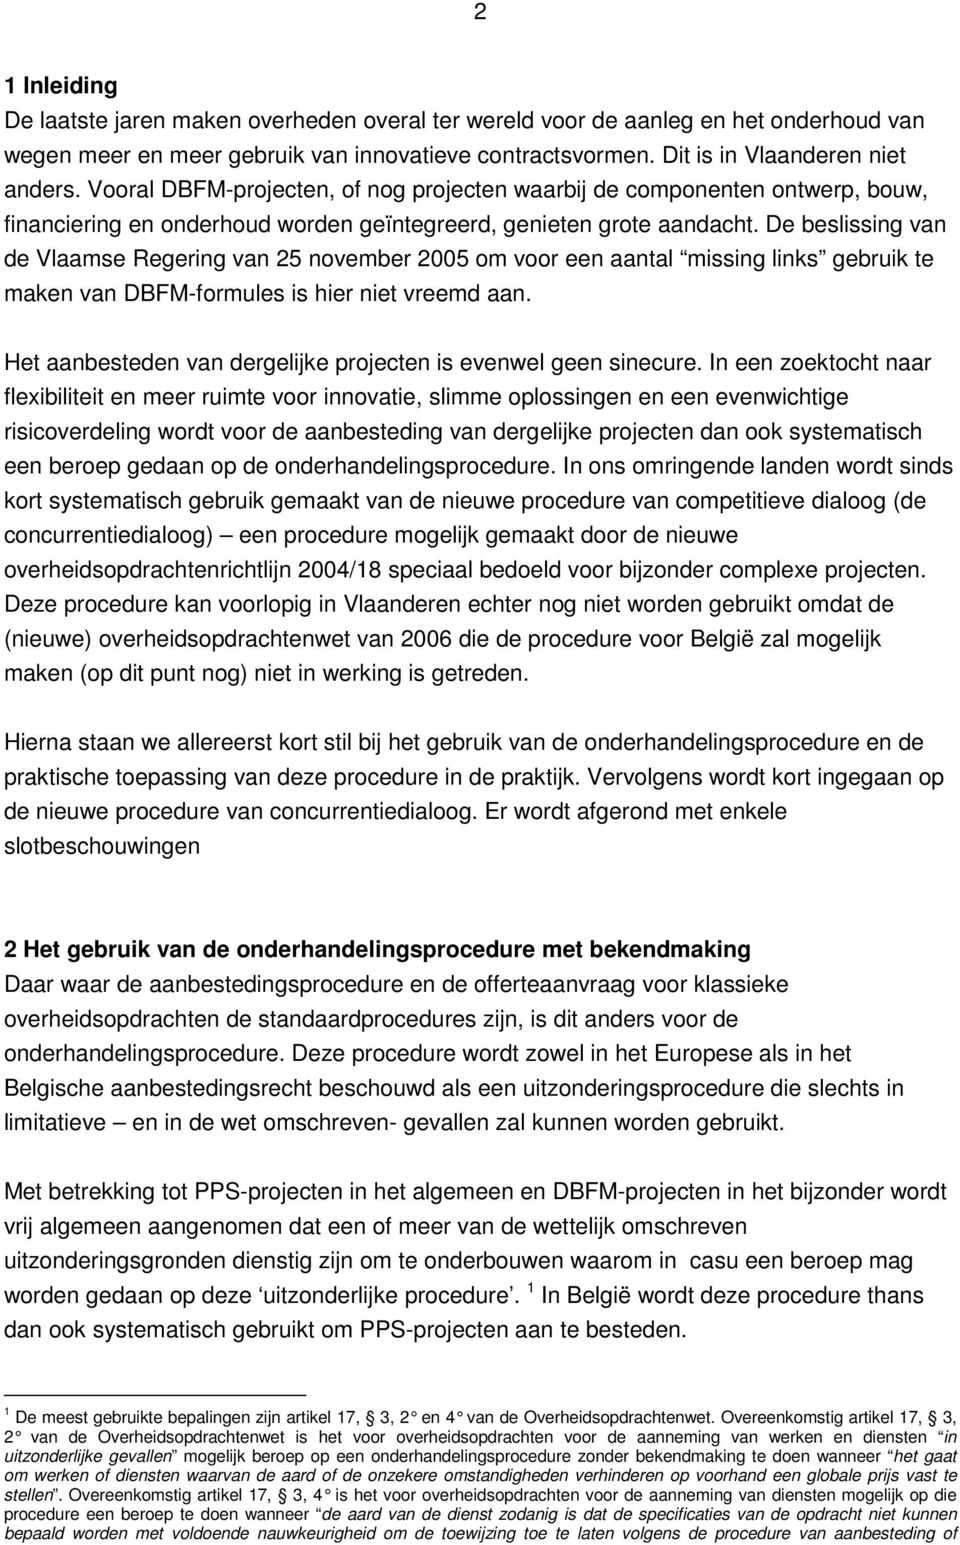 De beslissing van de Vlaamse Regering van 25 november 2005 om voor een aantal missing links gebruik te maken van DBFM-formules is hier niet vreemd aan.